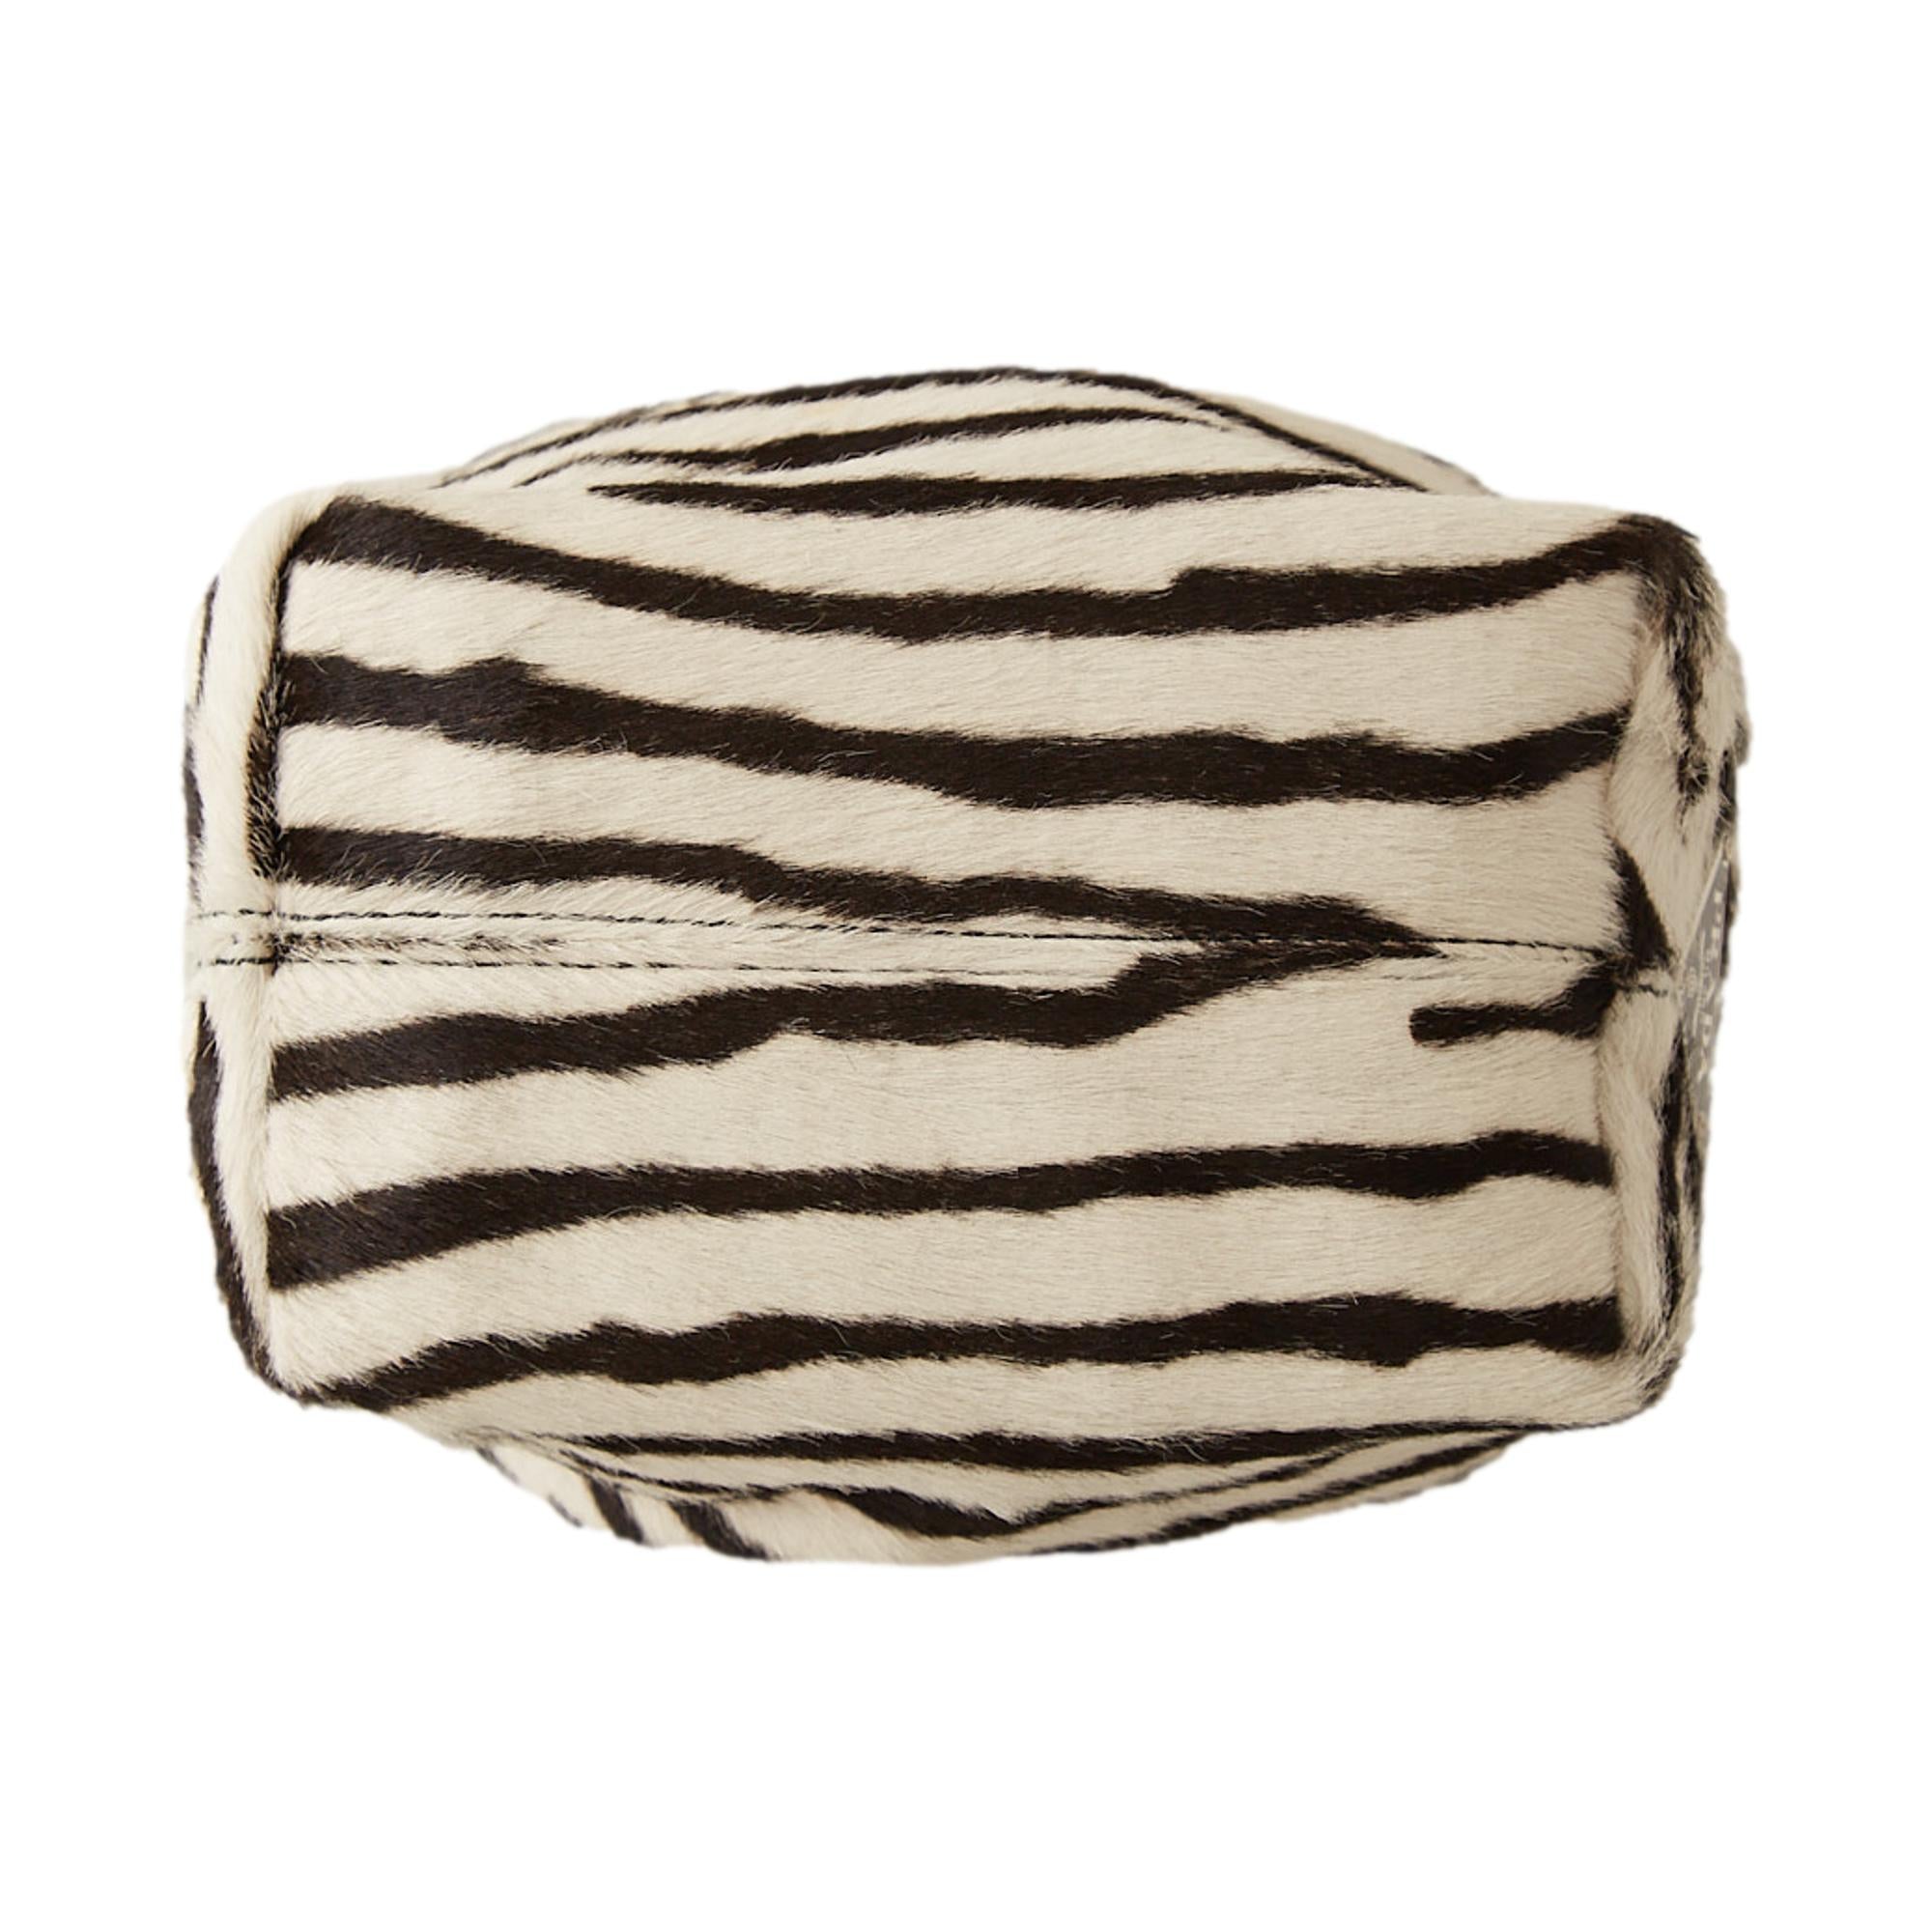 Prada Zebra Print Mini Top Handle Bag